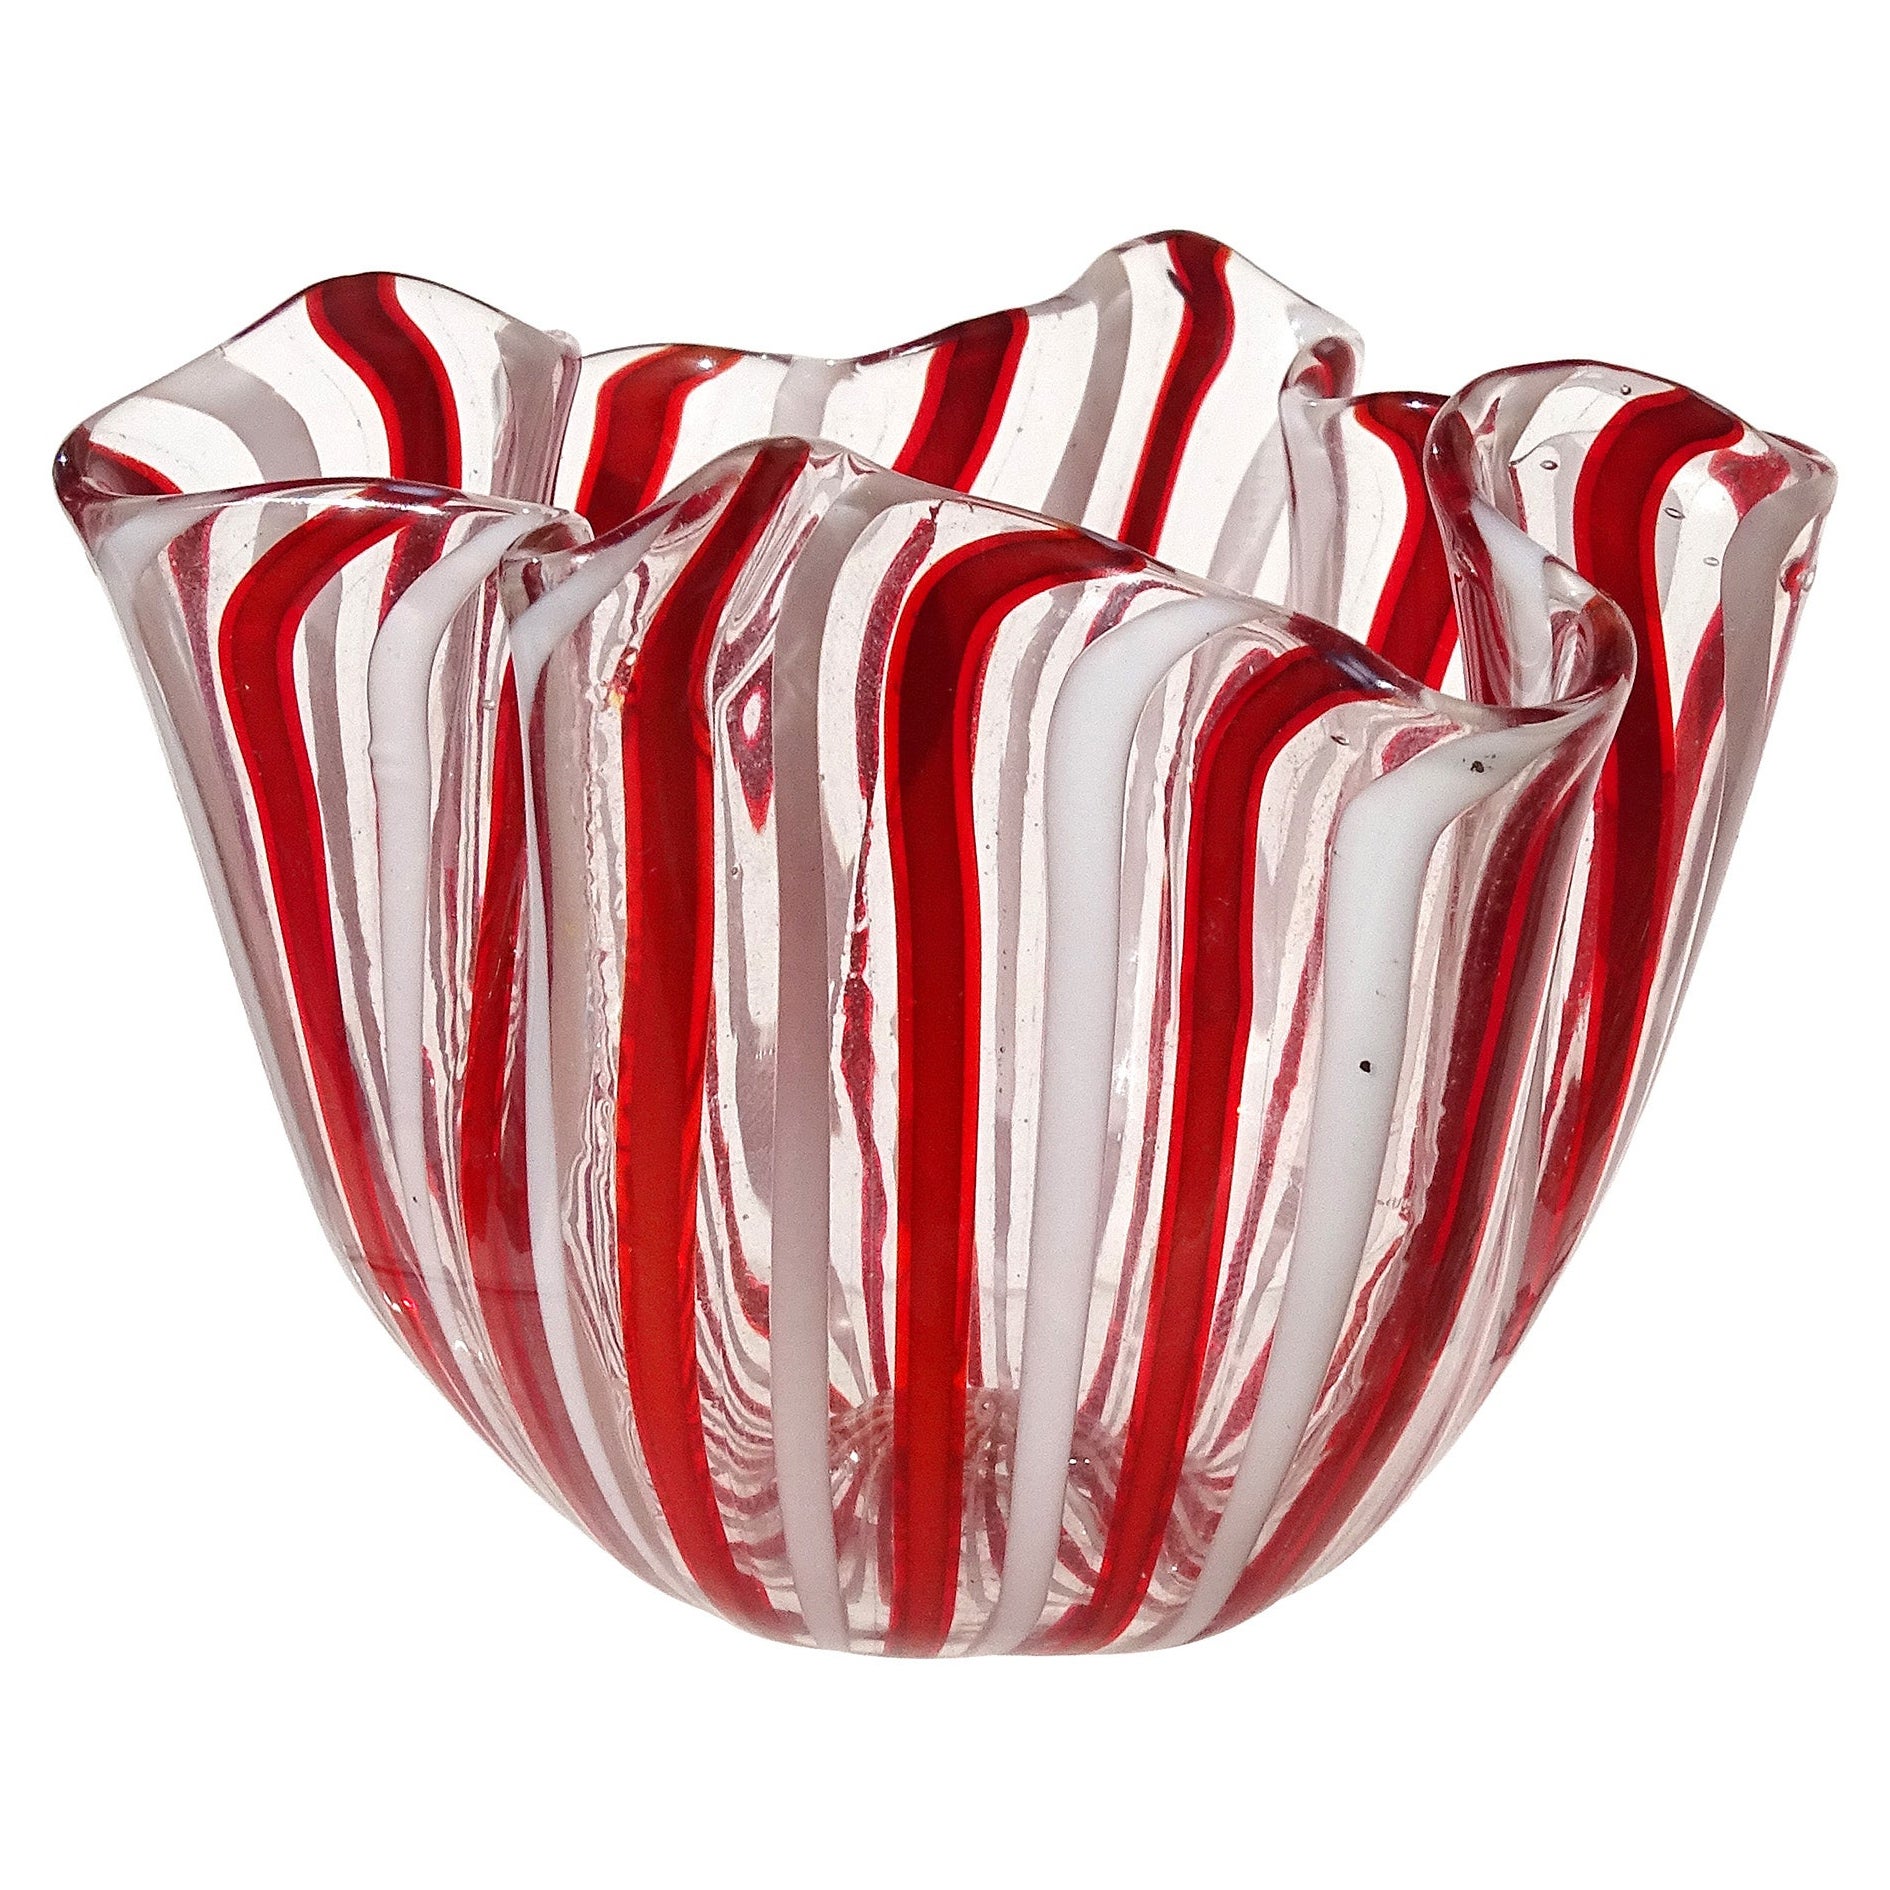 Venini Bianconi Murano Red White Ribbons Italian Art Glass Fazzoletto Vase For Sale